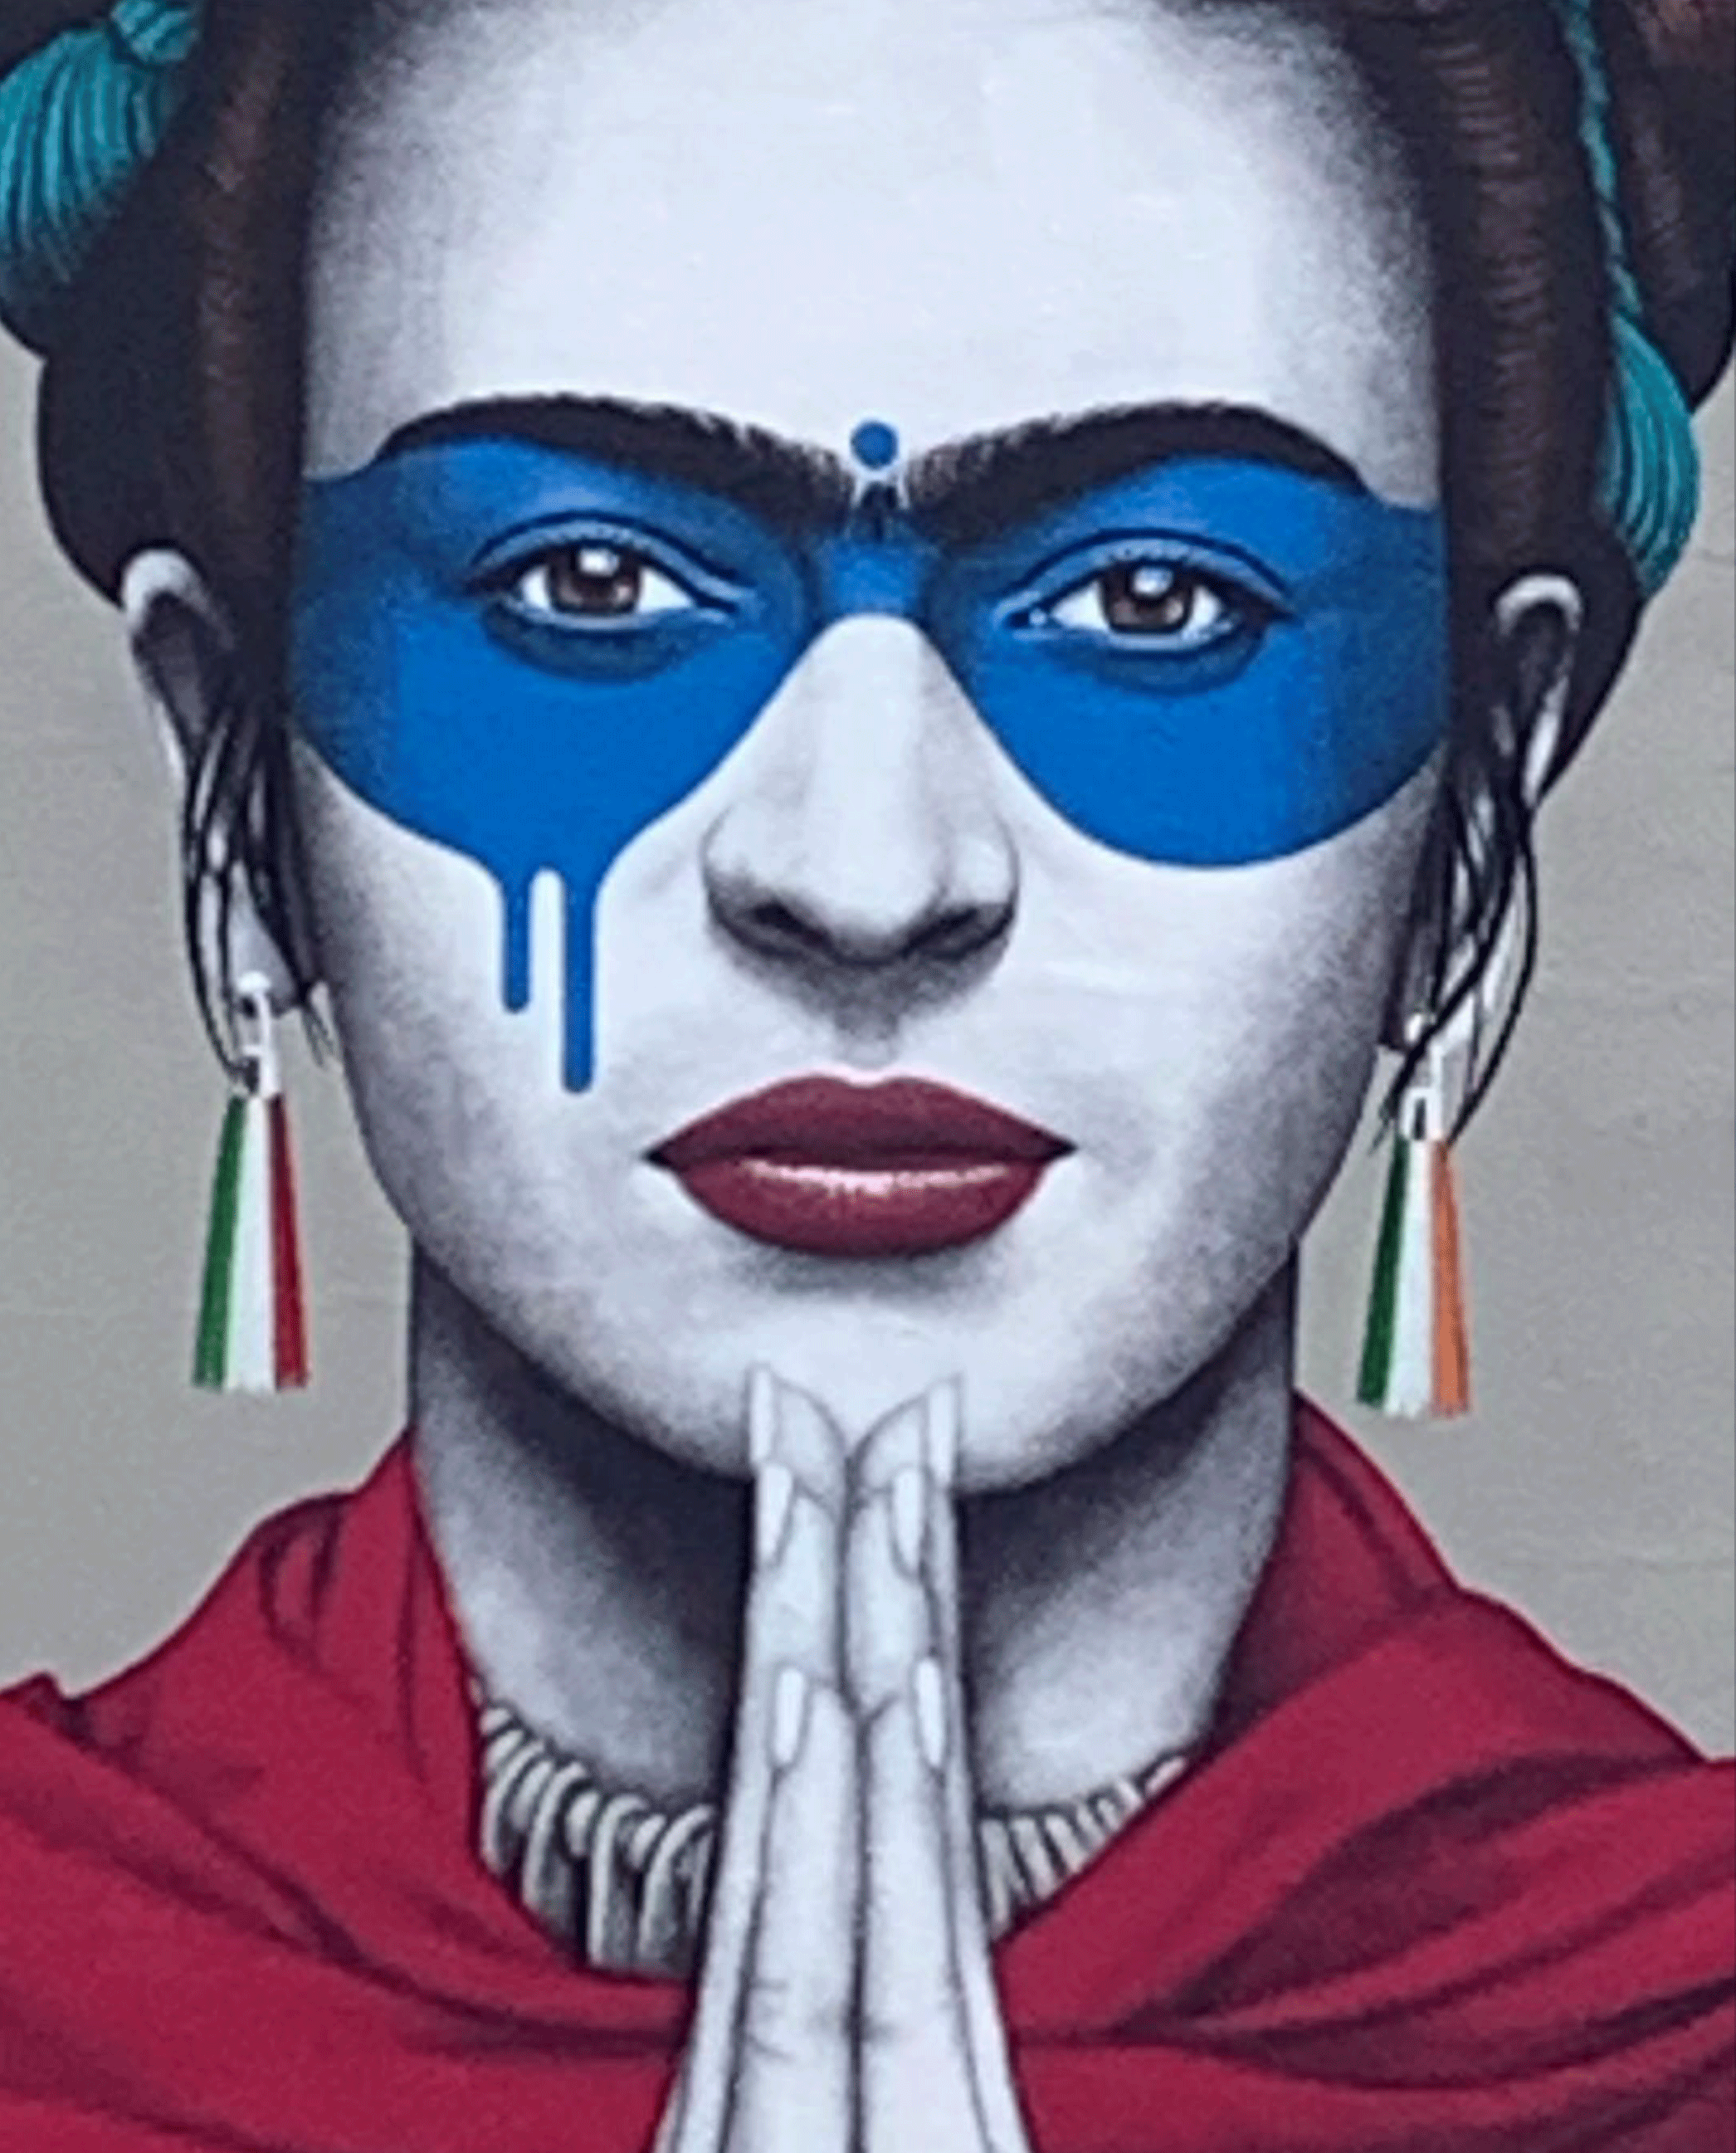 Fin Dac Frida Kahlo Mural